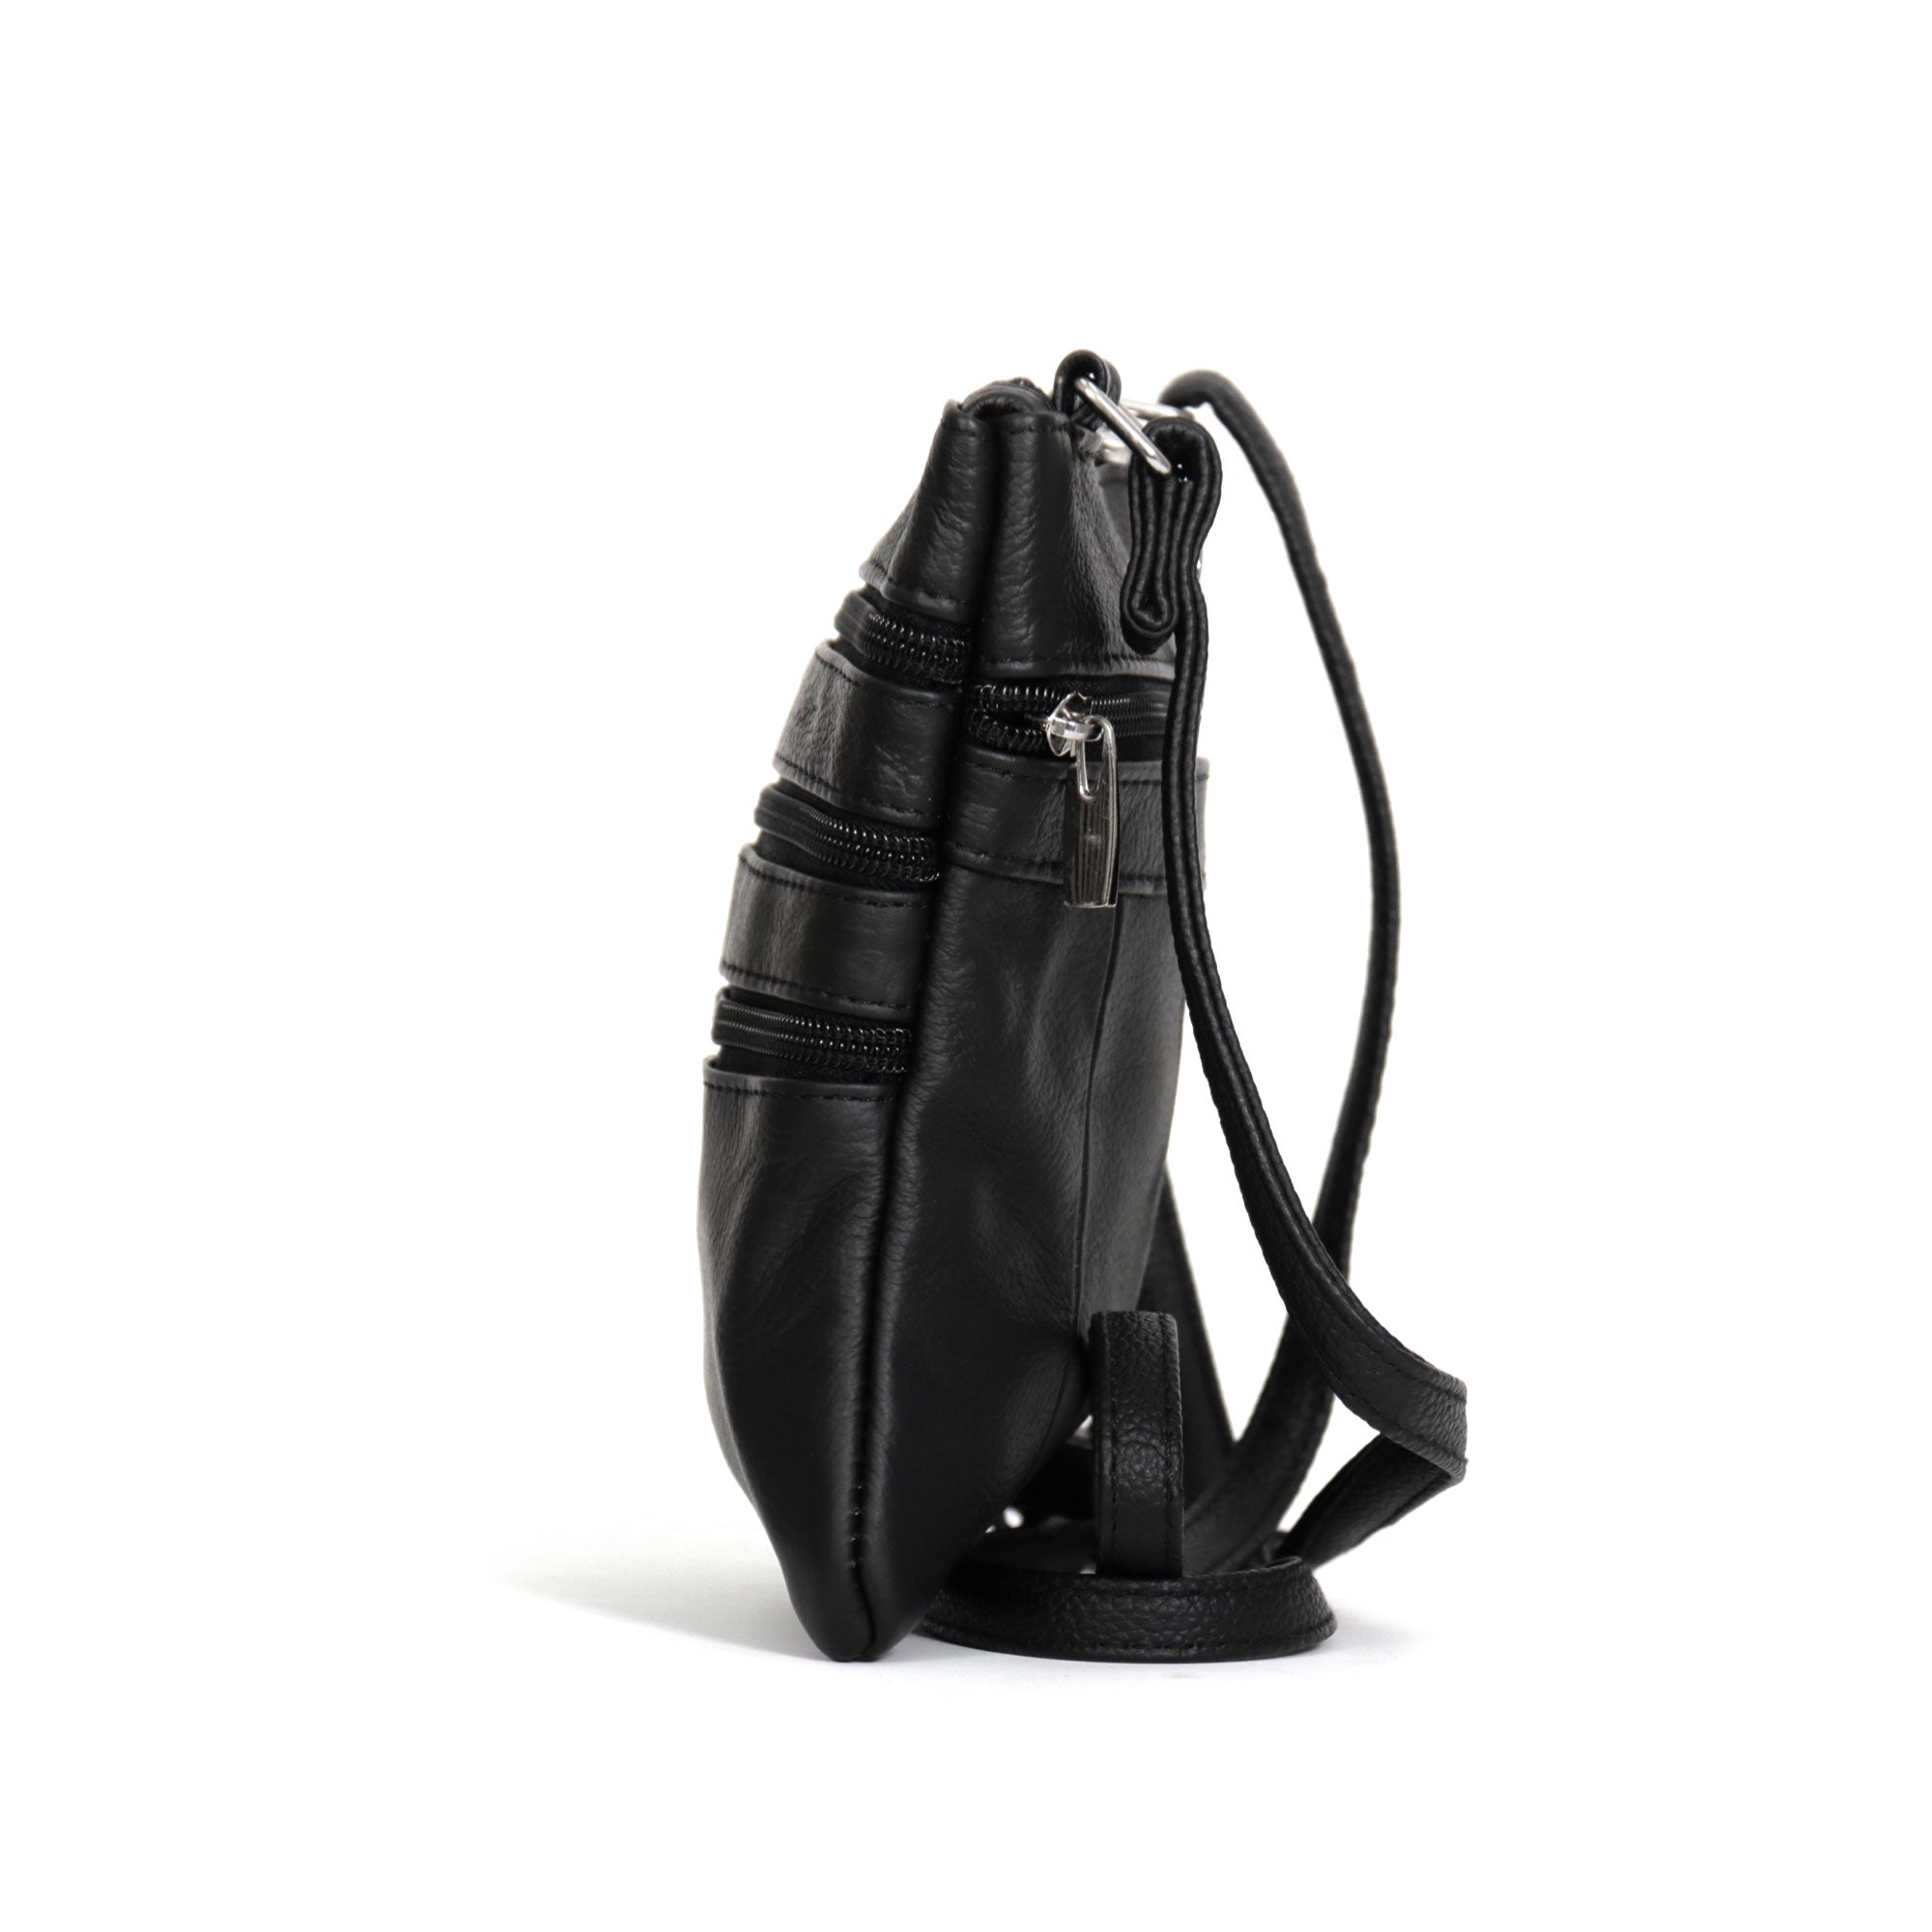 Buy Baggit Contrive Extra Small Black Tote Handbag Online